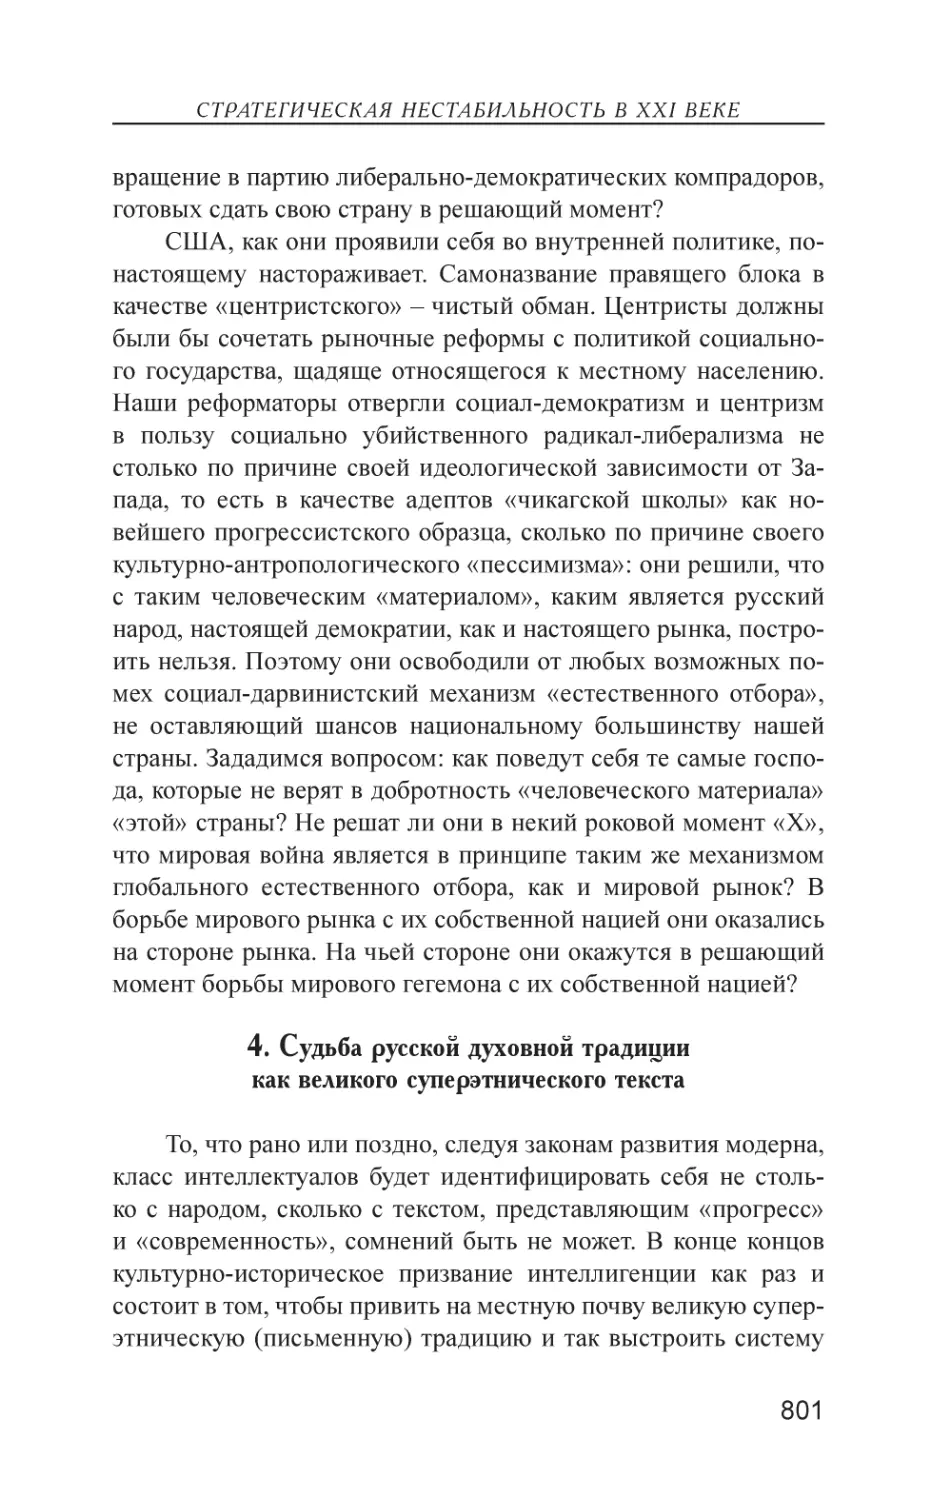 4. Судьба русской духовной традиции как великого суперэтнического текста